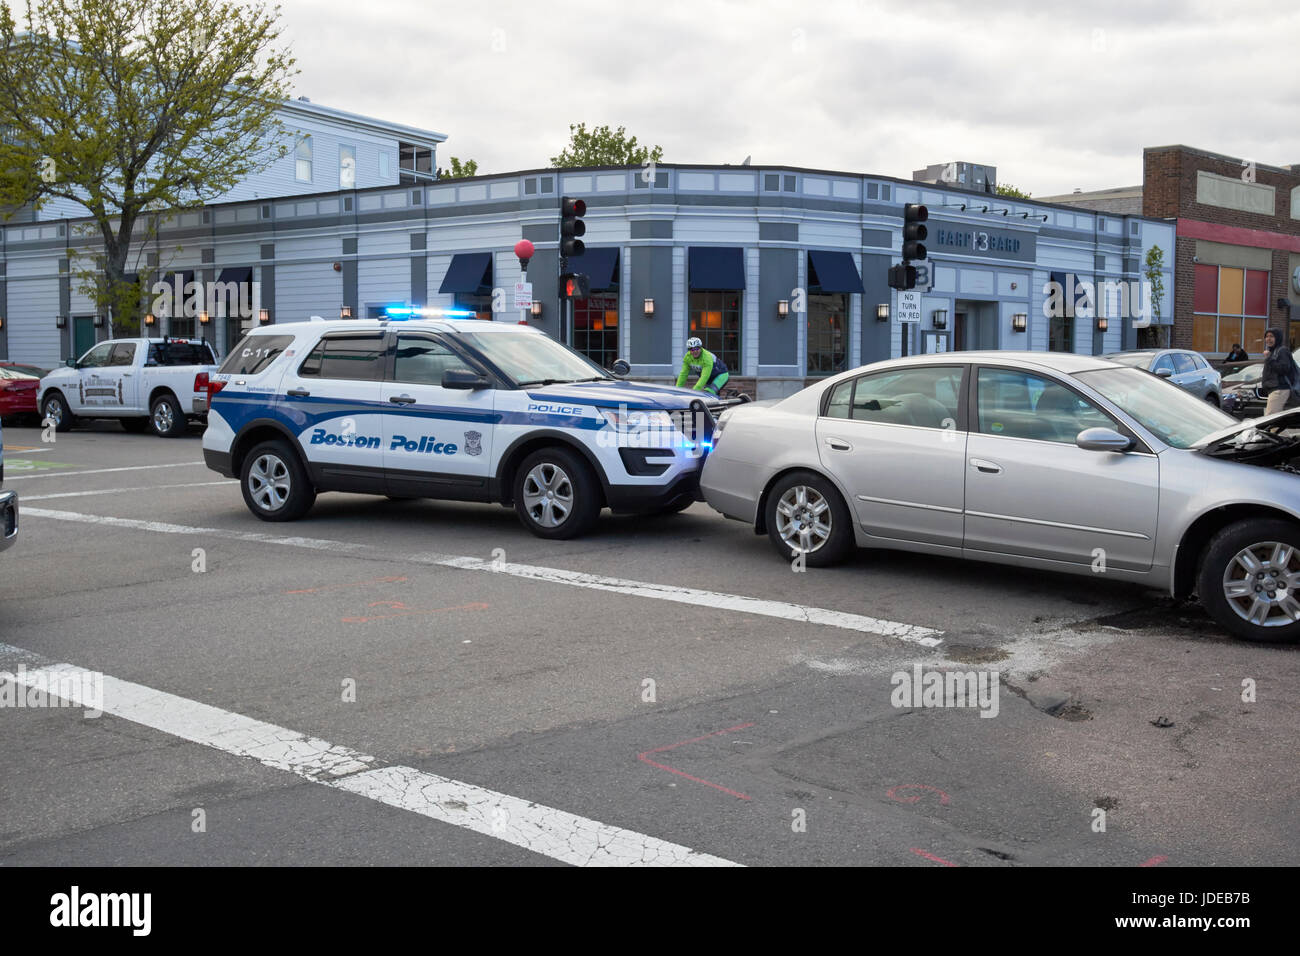 La polizia di boston suv interceptor spingendo incidente auto danneggiata immobilizzato a causa di crash fuori strada in corrispondenza di intersezione nella periferia di Boston STATI UNITI D'AMERICA Foto Stock